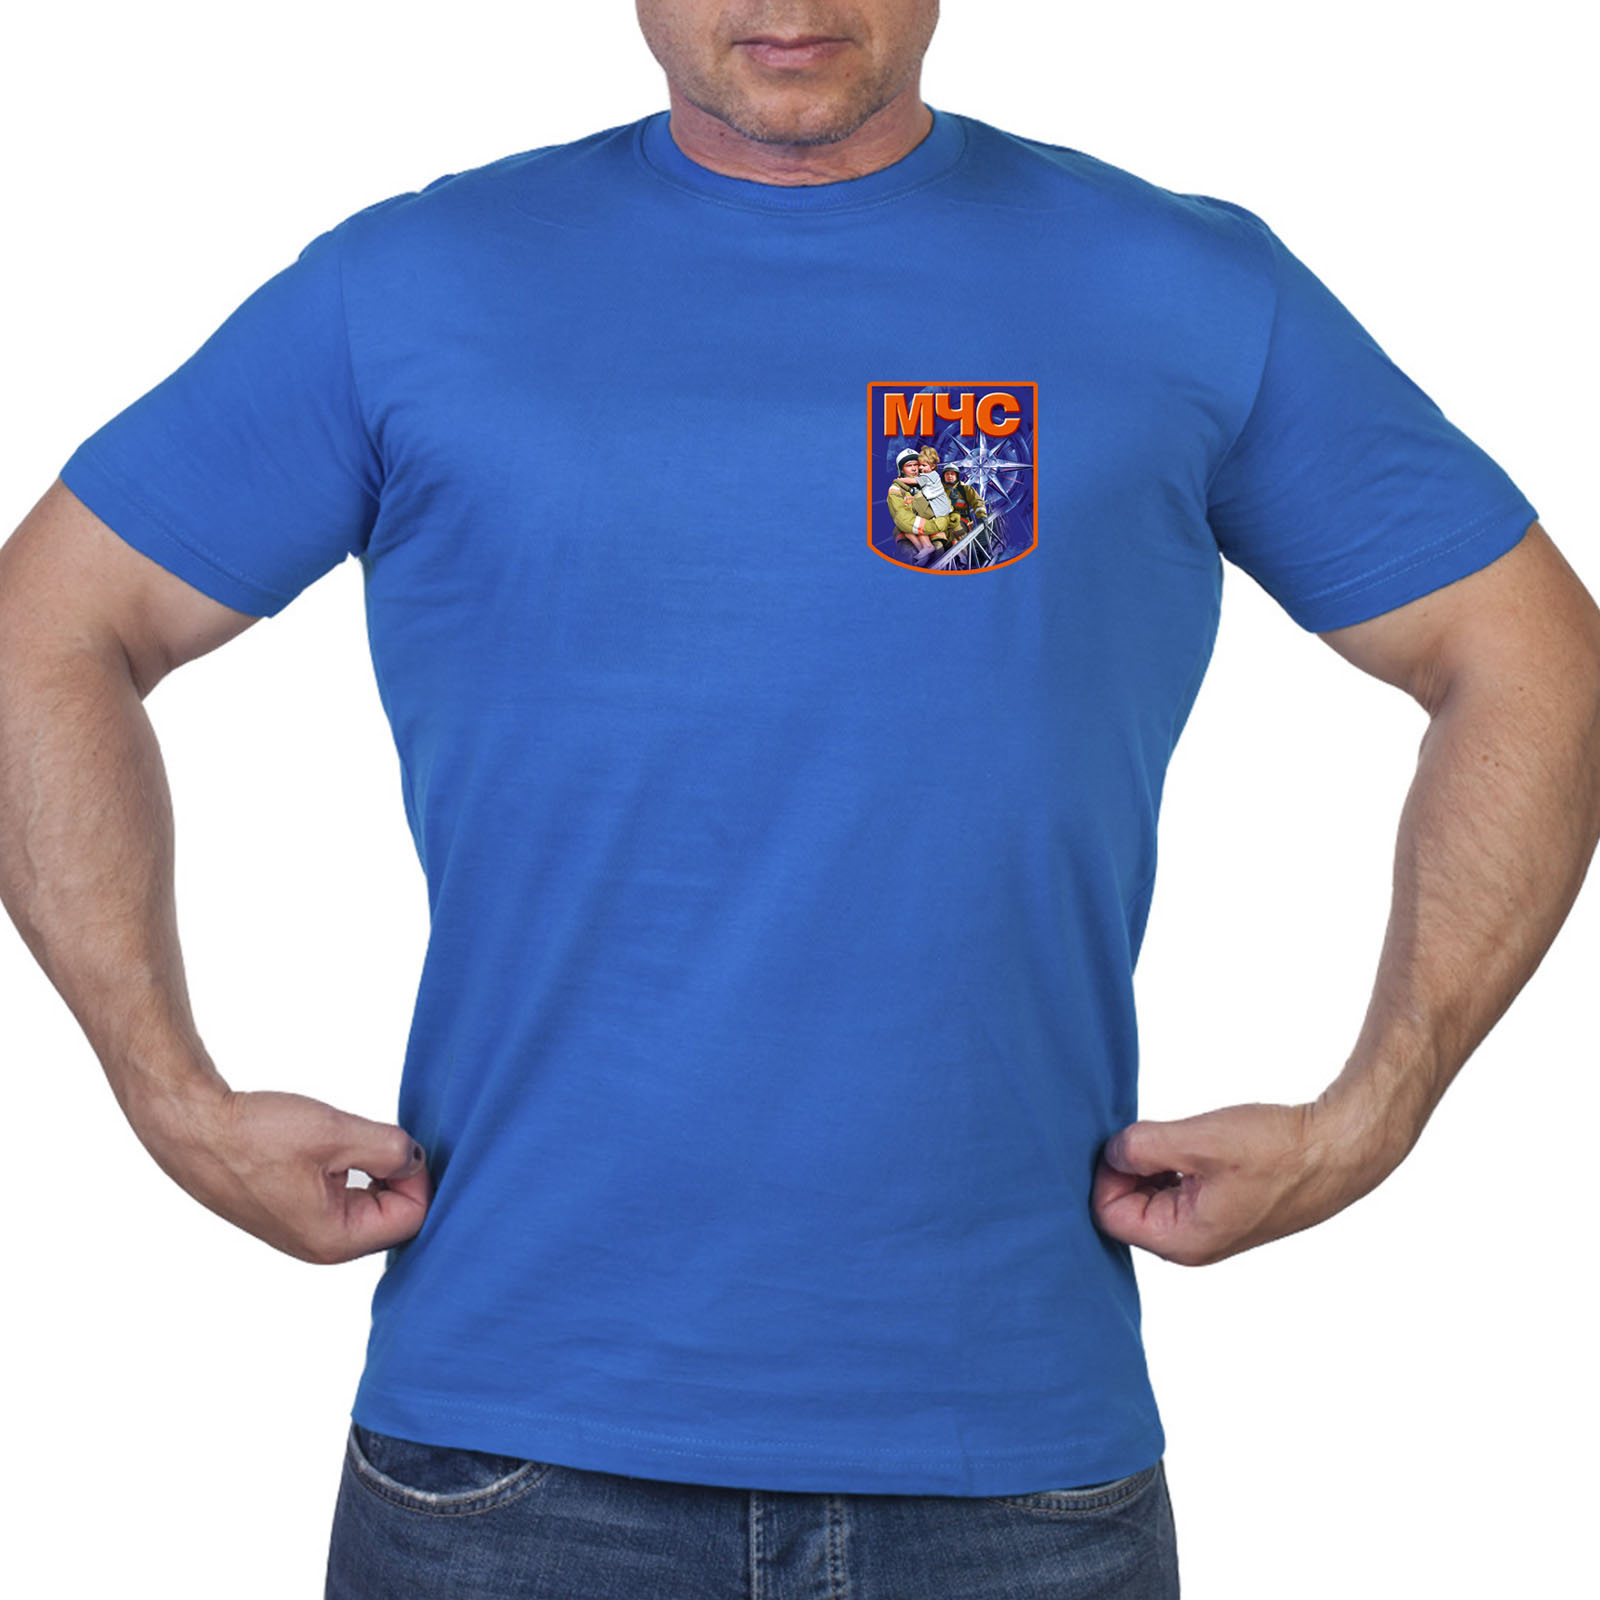 Васильковая футболка с термотрансфером "МЧС"